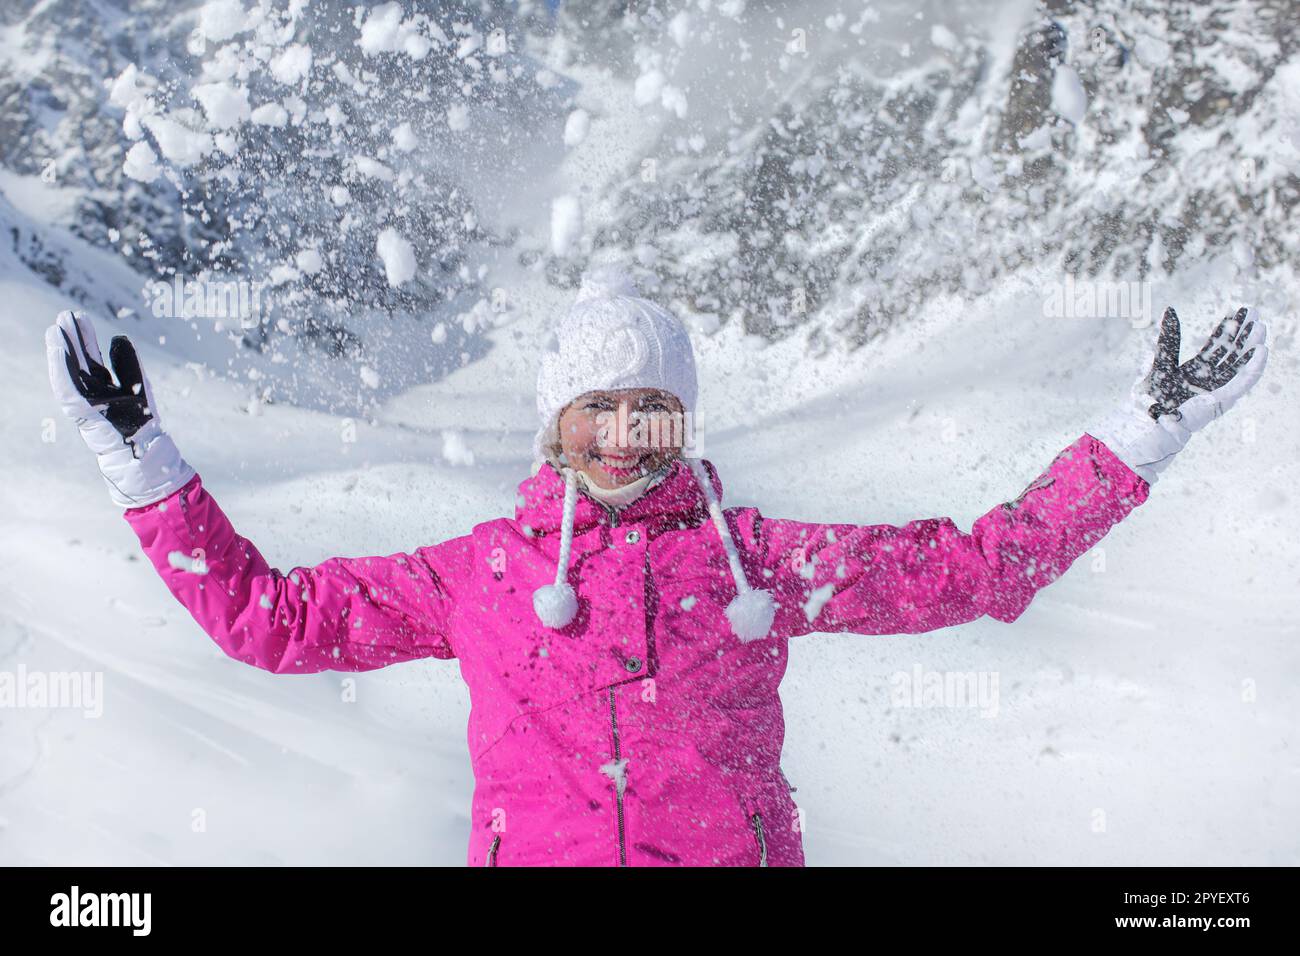 Junge Frau in Rosa ski Jacke, Handschuhe und Winter hat, lächelnd, Schnee werfen in die Luft Stockfoto